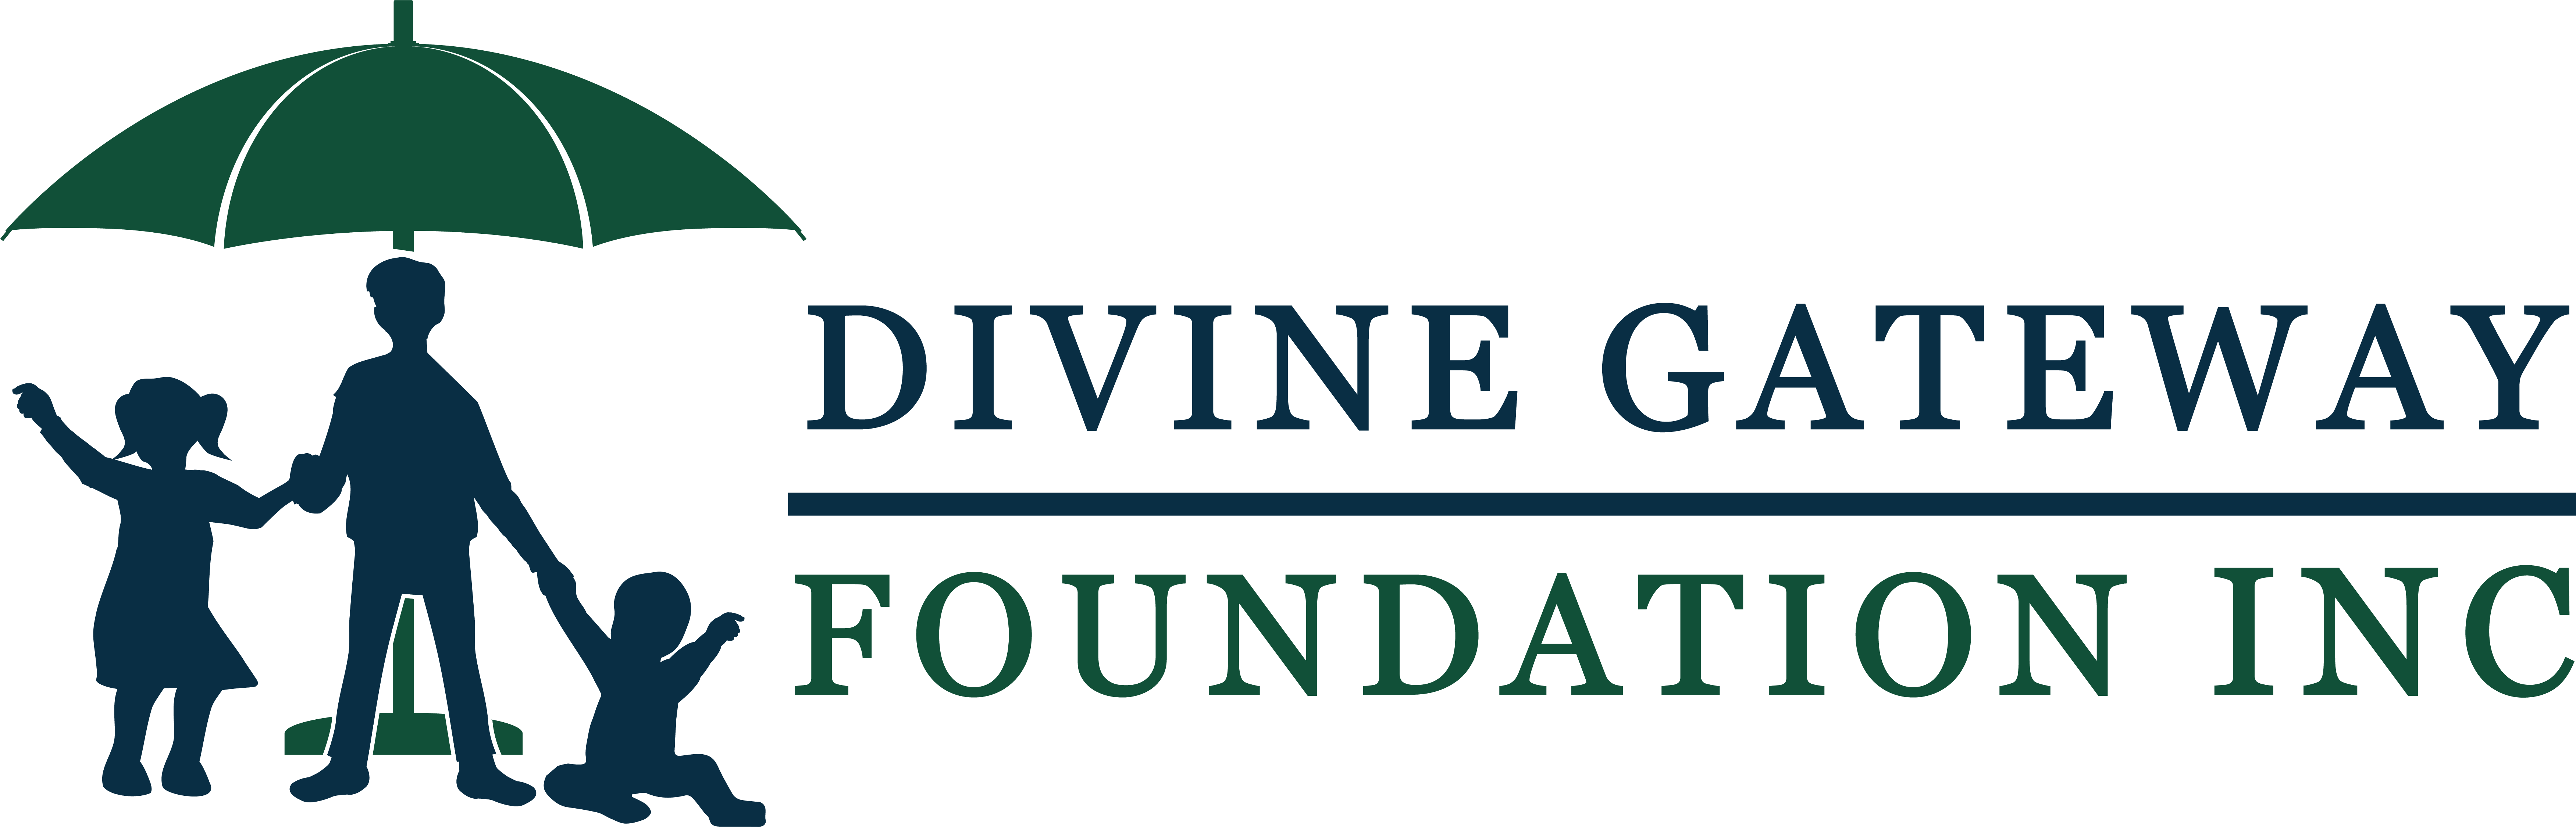 Divine Gateway Foundation